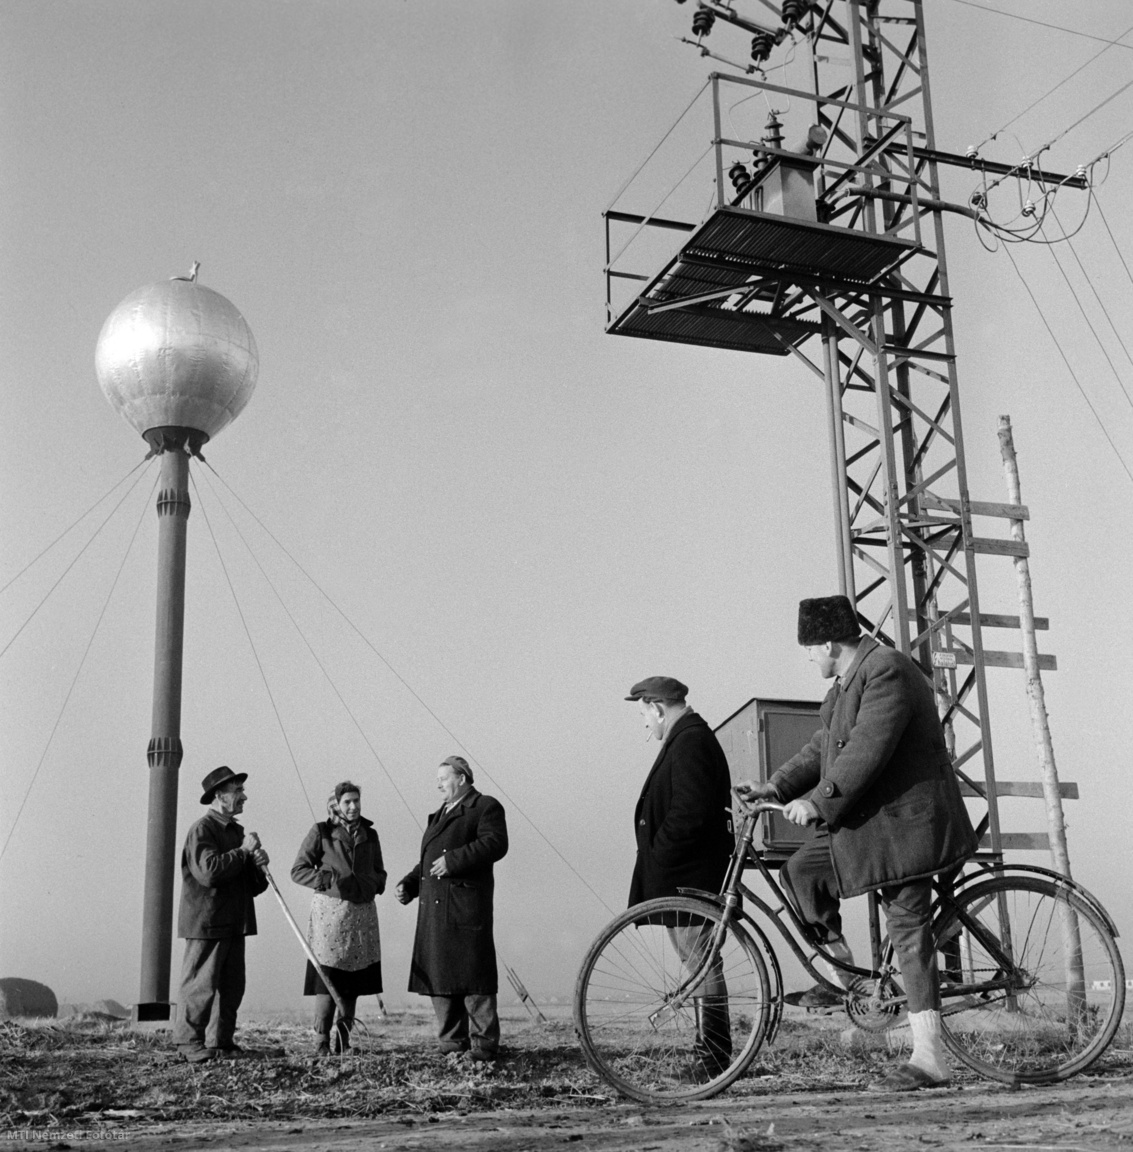 Magyarország, 1959. november 27. Termelőszövetkezeti (tsz-) tagok beszélgetnek munka közben a gazdaság földjén. Háttérben jobbra egy villanyoszlopra szerelt transzformátor, balra egy víztorony (hidroglóbusz). A felvétel készítésének helyszíne ismeretlen.